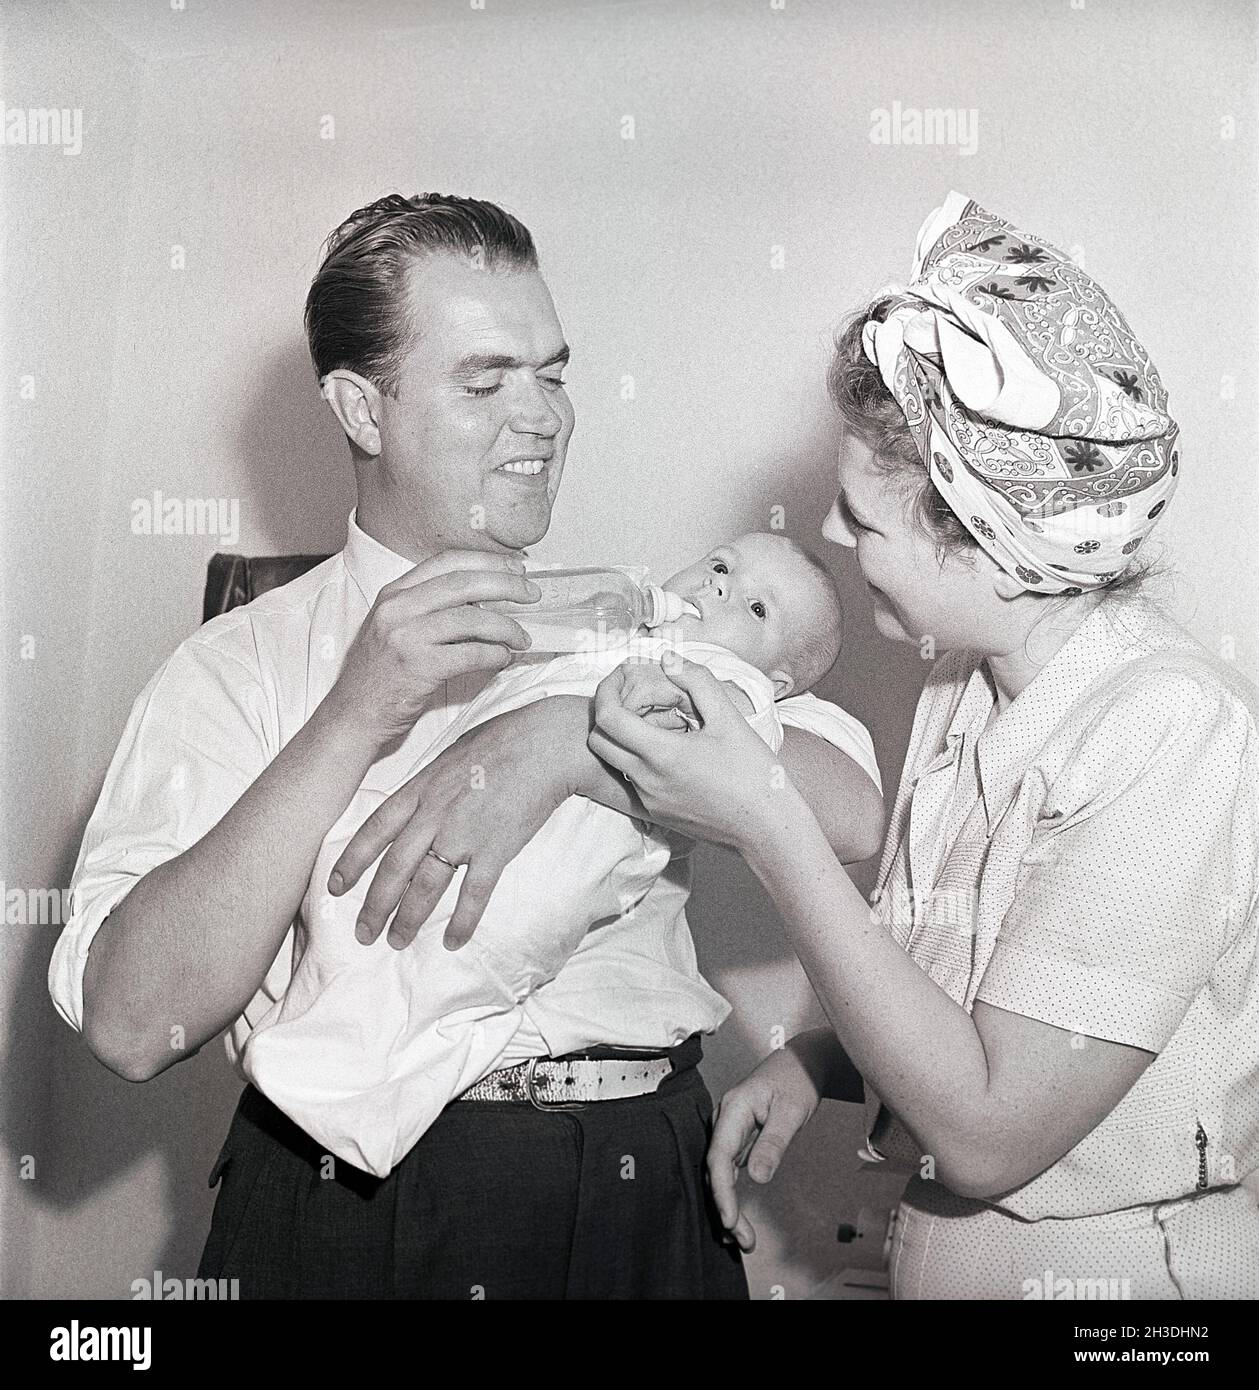 Genitori negli anni '40. Un bambino appena nato sta bevendo da un biberon. Il padre lo tiene e la madre guarda, sorridendo. Svezia 1947. Rif. Kristoffersson AD13-11 Foto Stock